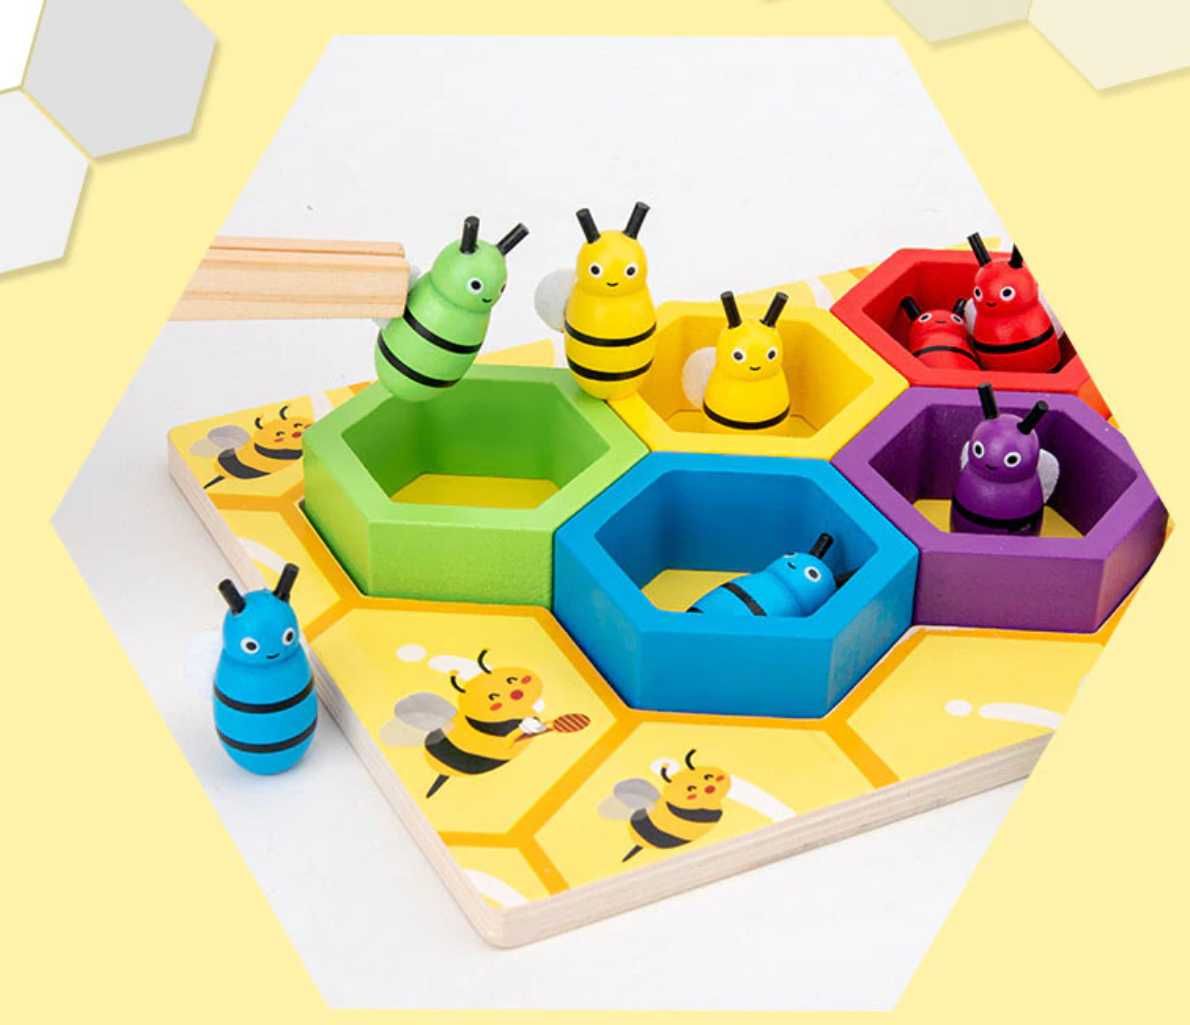 ТОП! Нов модел дървена игра - кошер с пчелички и хексагони от дърво